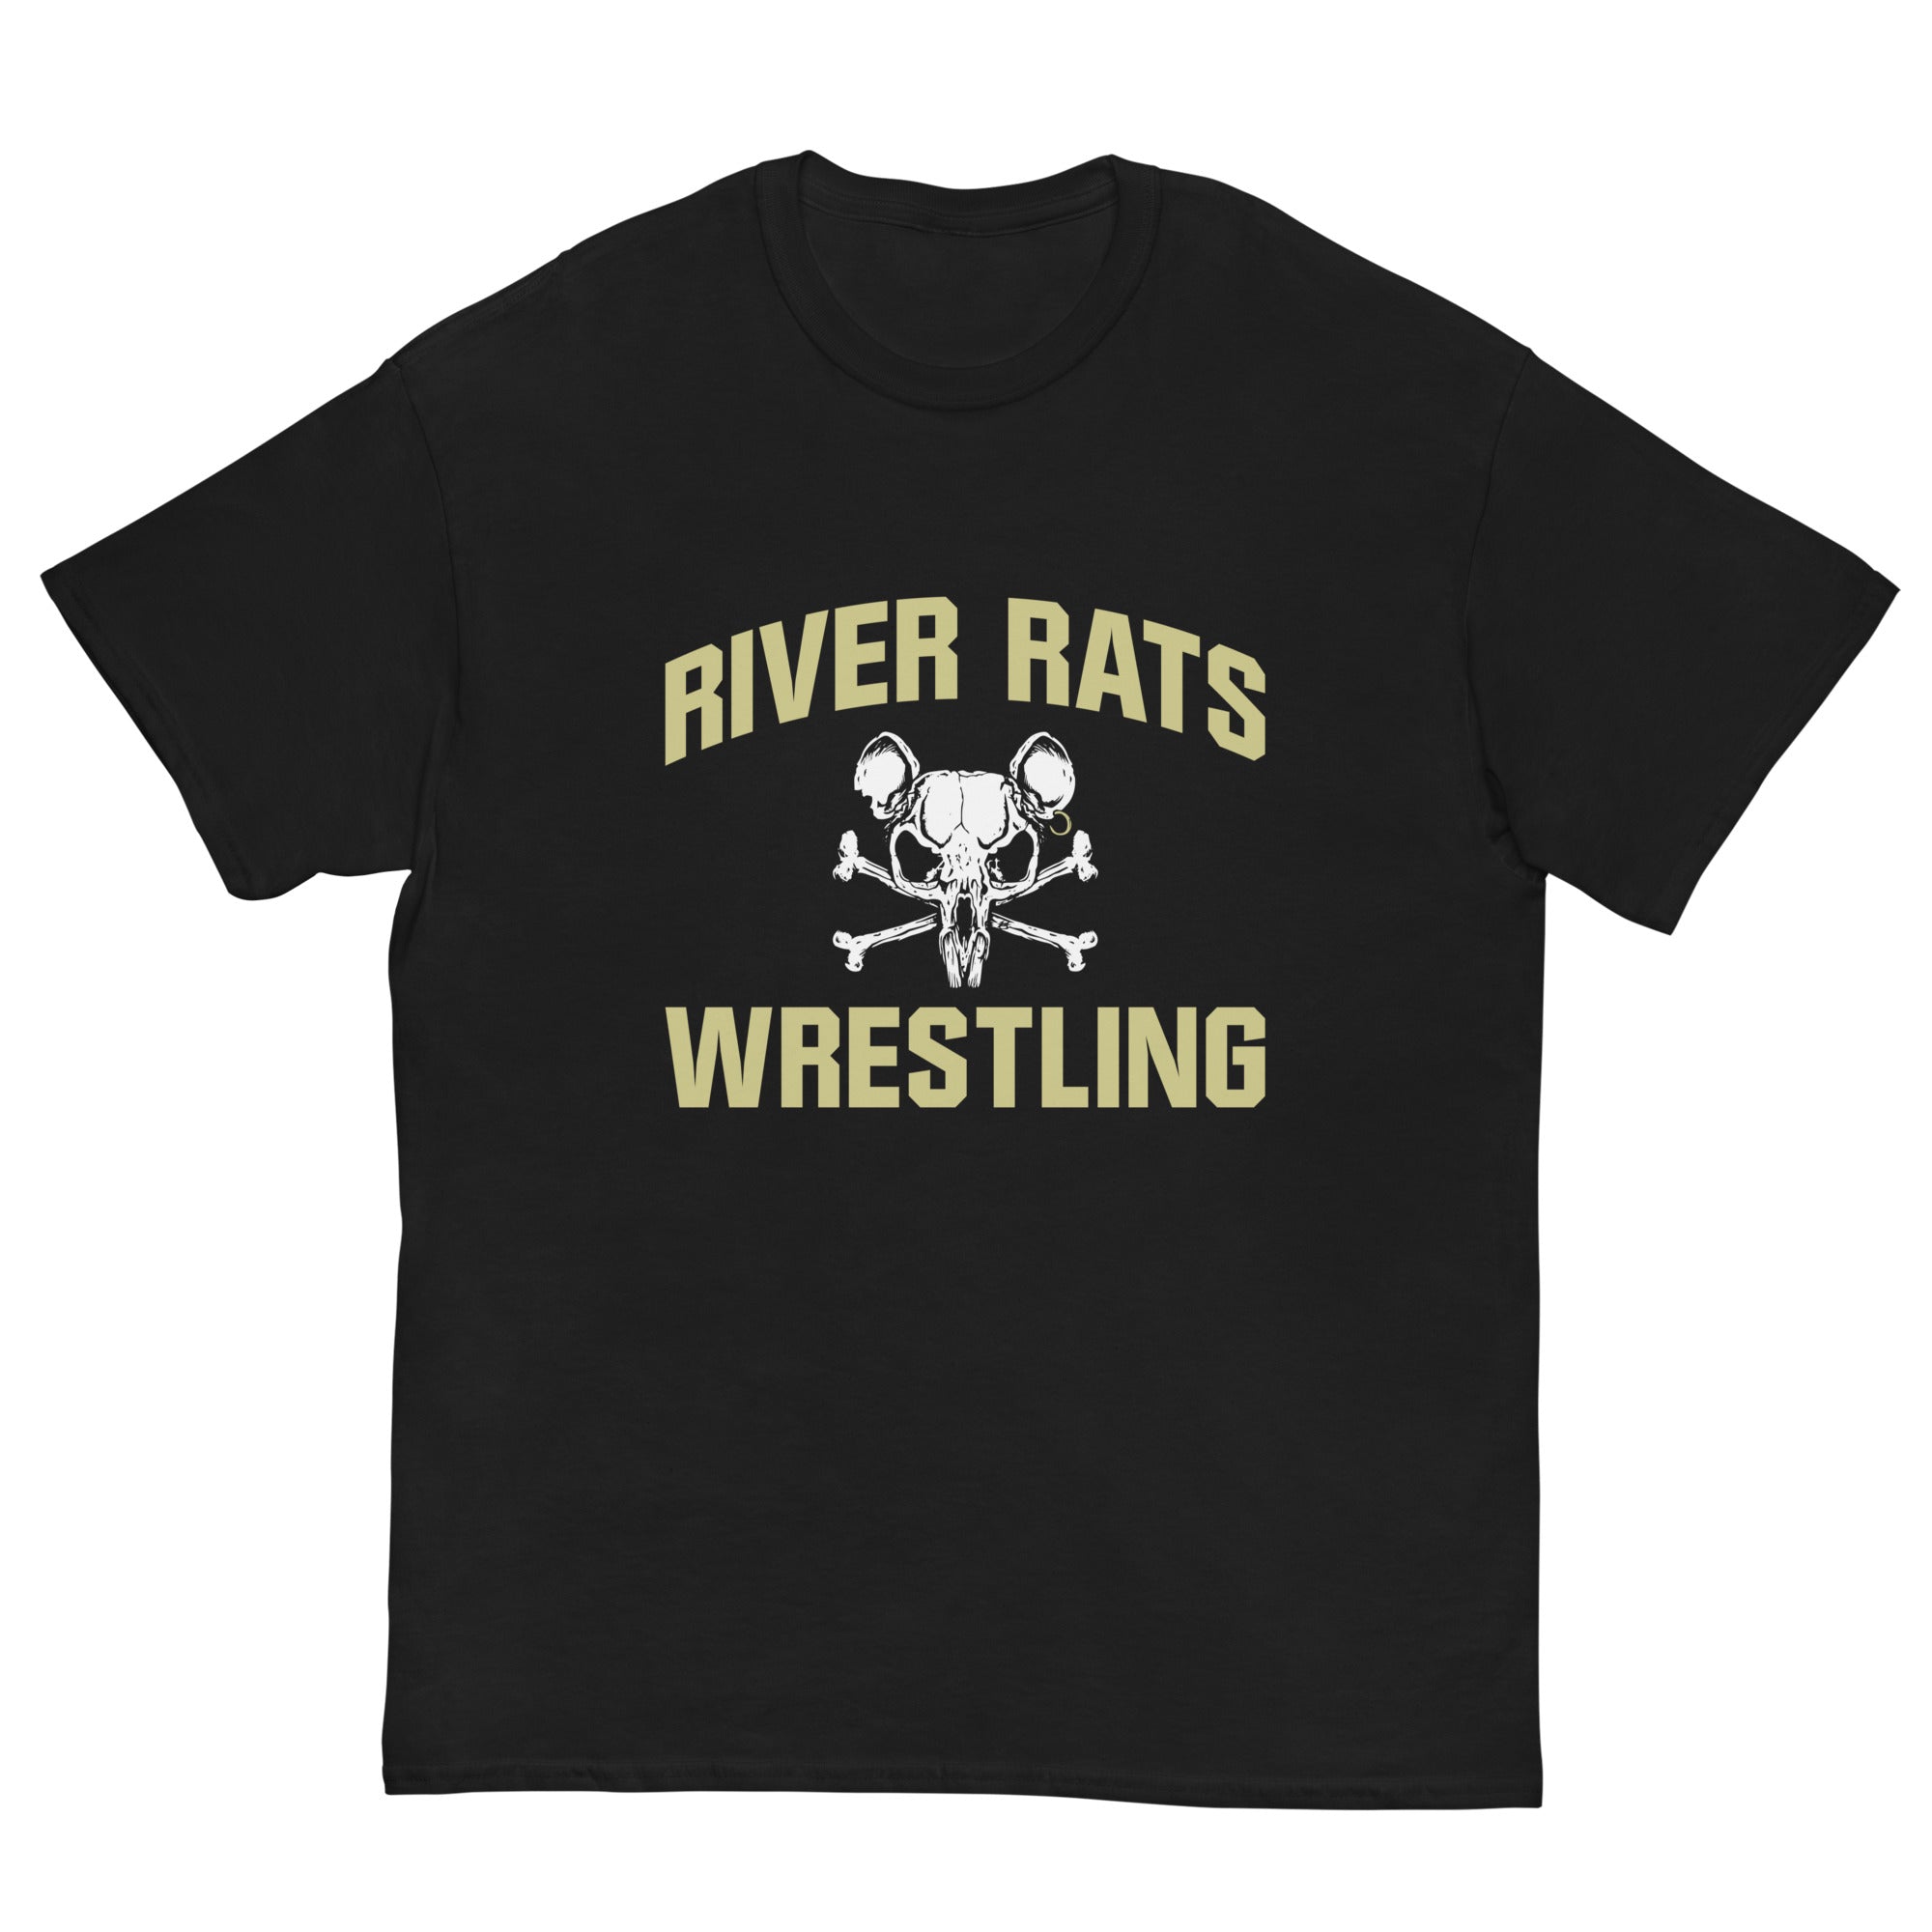 River Rats Wrestling Men's classic tee